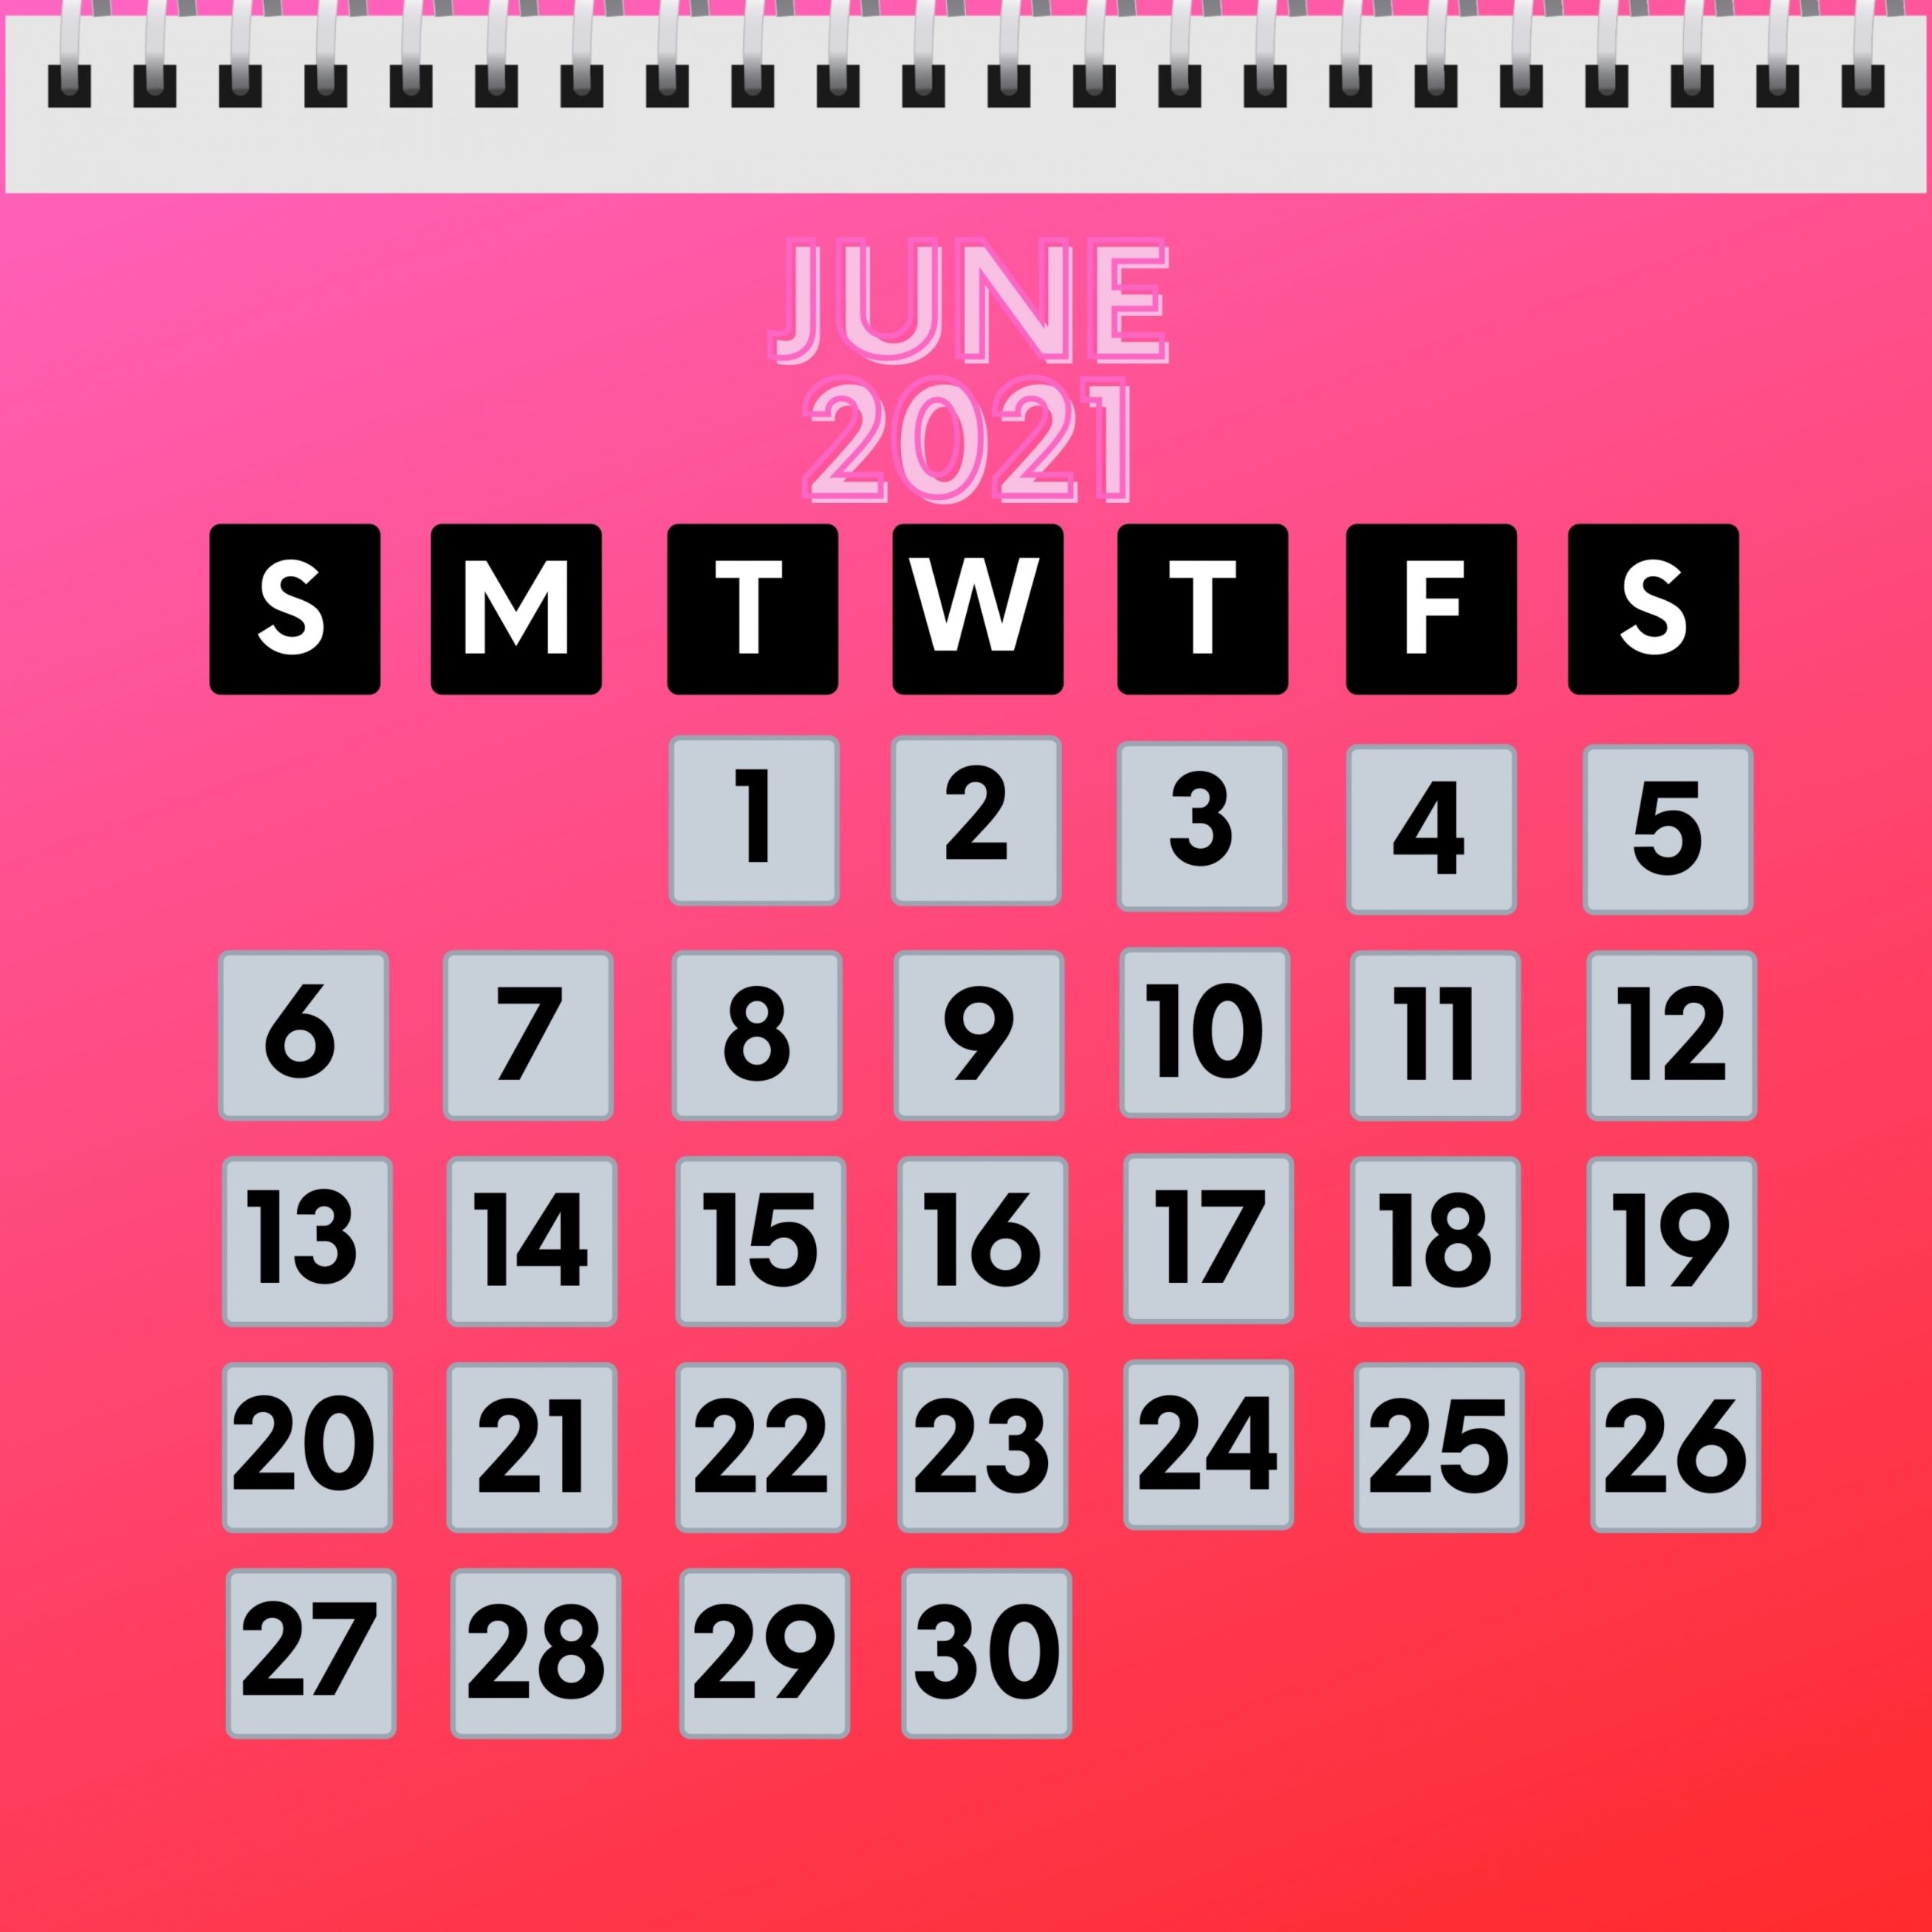 2524x2524 Parallax wallpaper 4k June 2021 Calendar iPad Wallpaper 2524x2524 pixels resolution